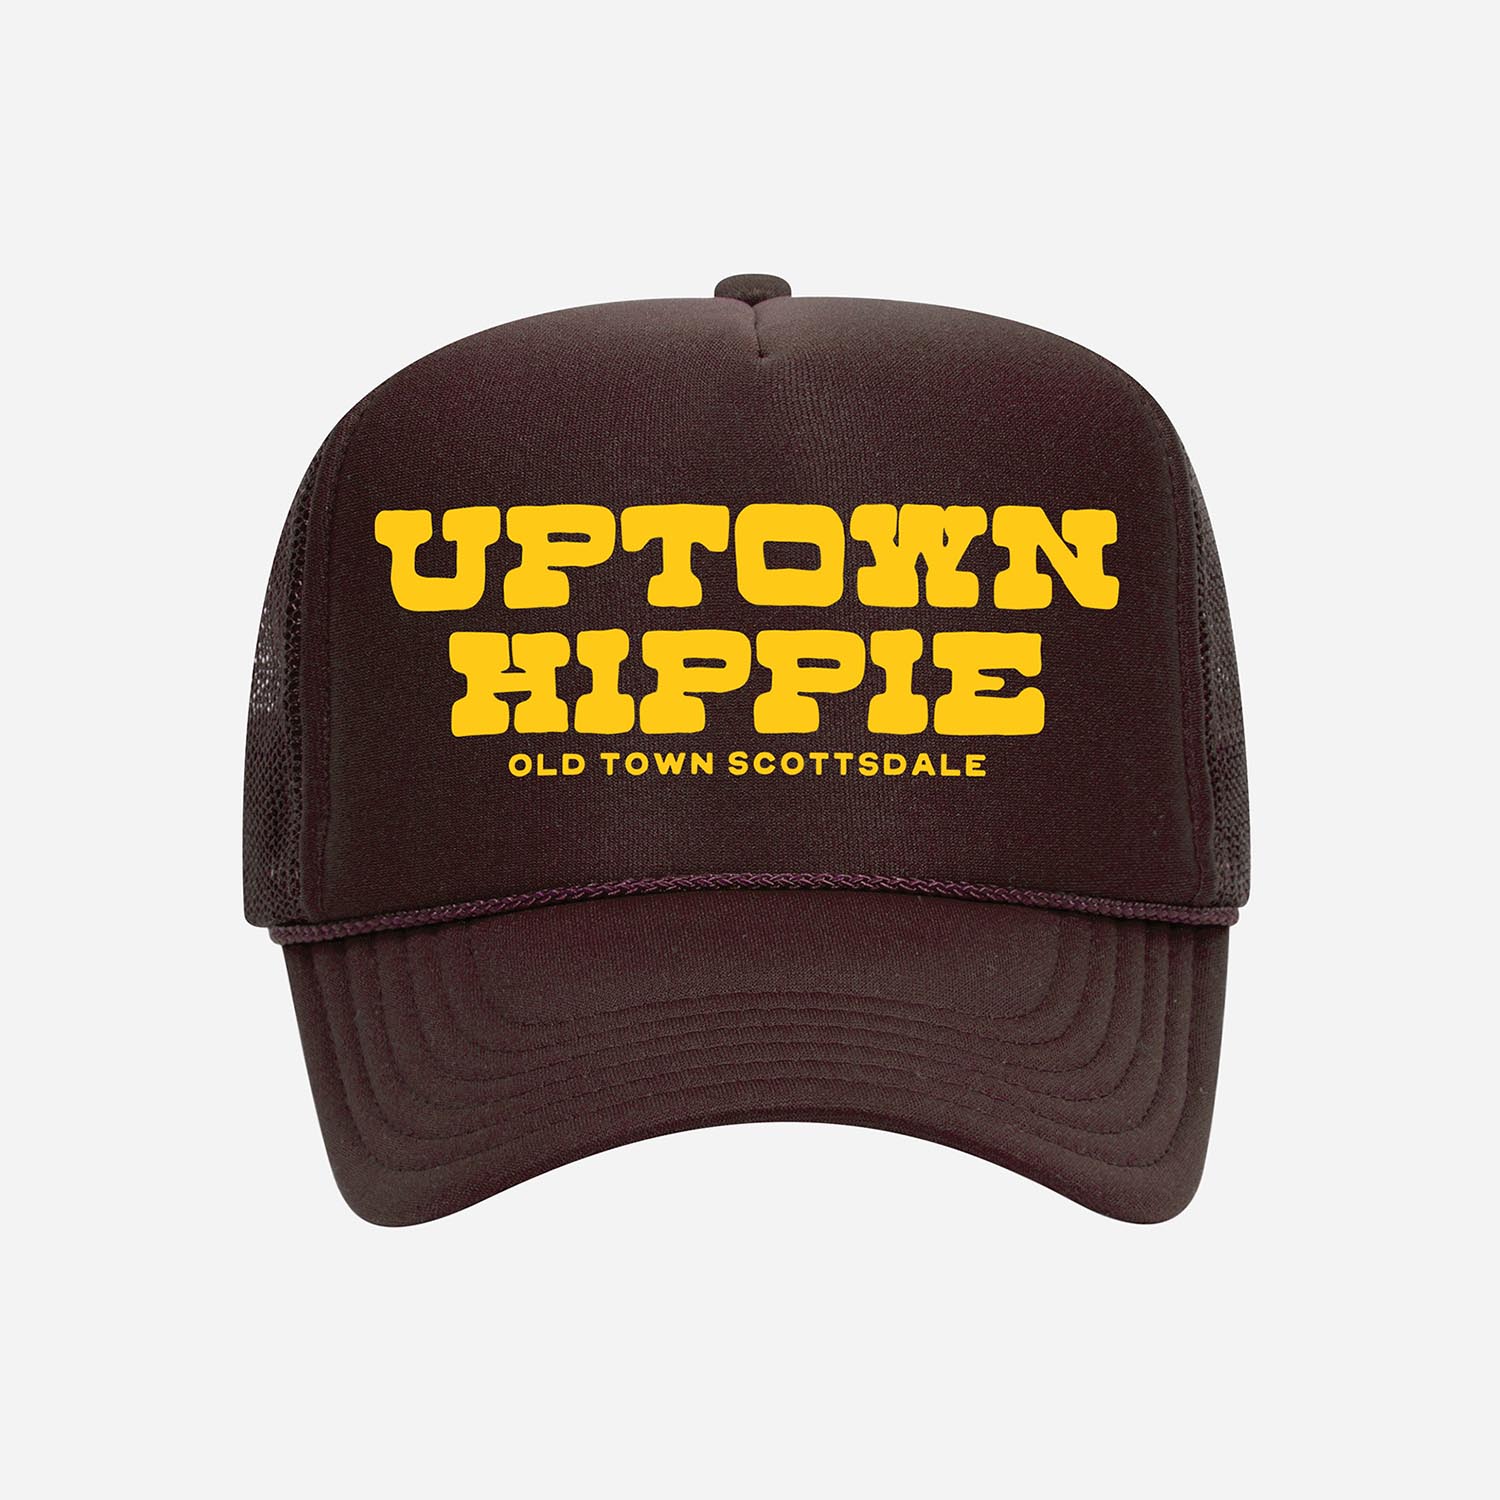 Uptown Hippie Western Trucker Hat